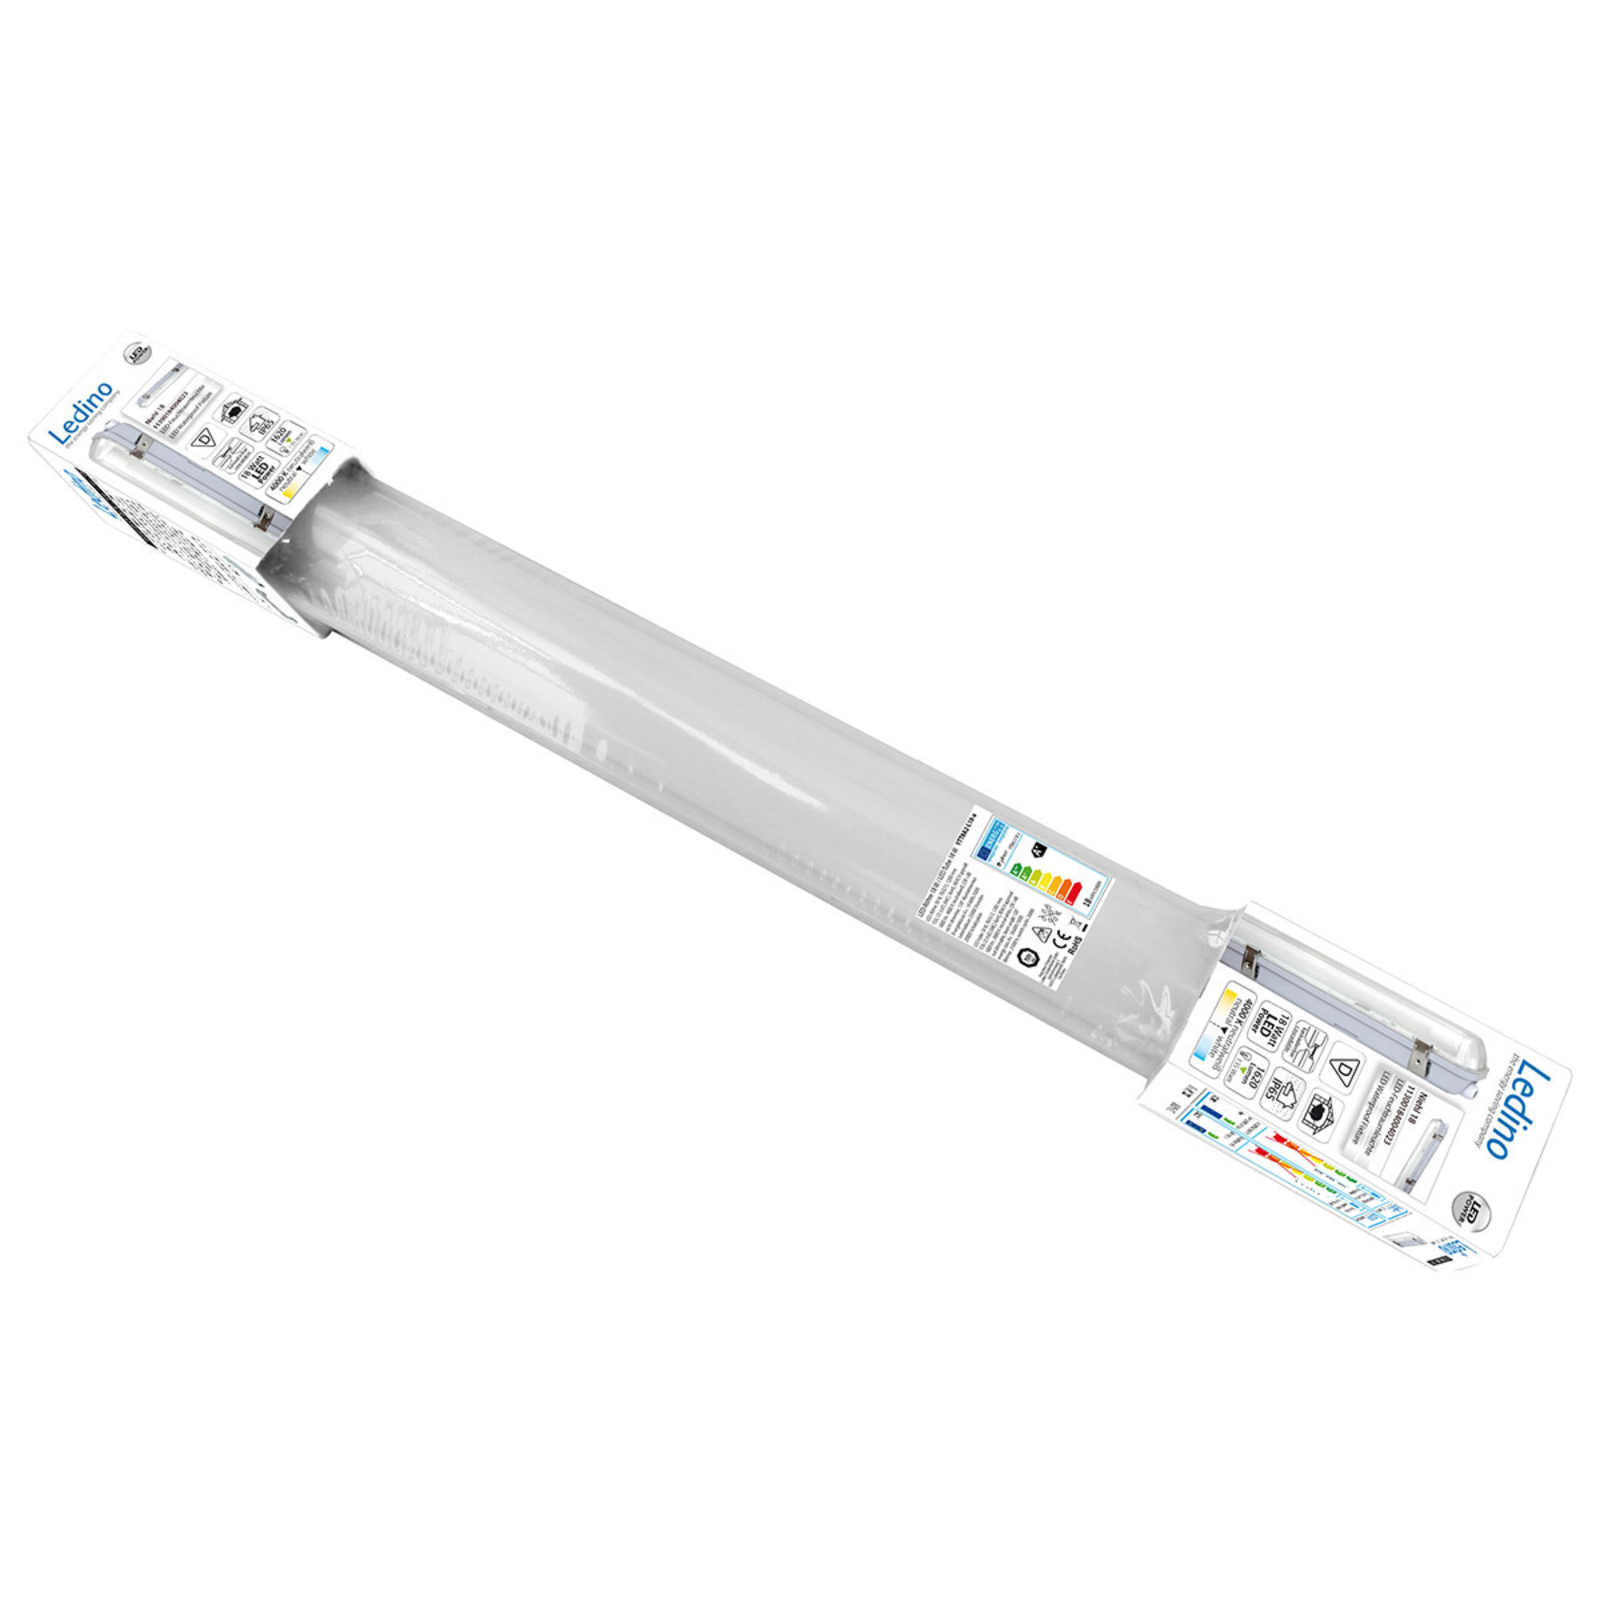 LED-våtrumslampa Niehl 24 IP65 24W